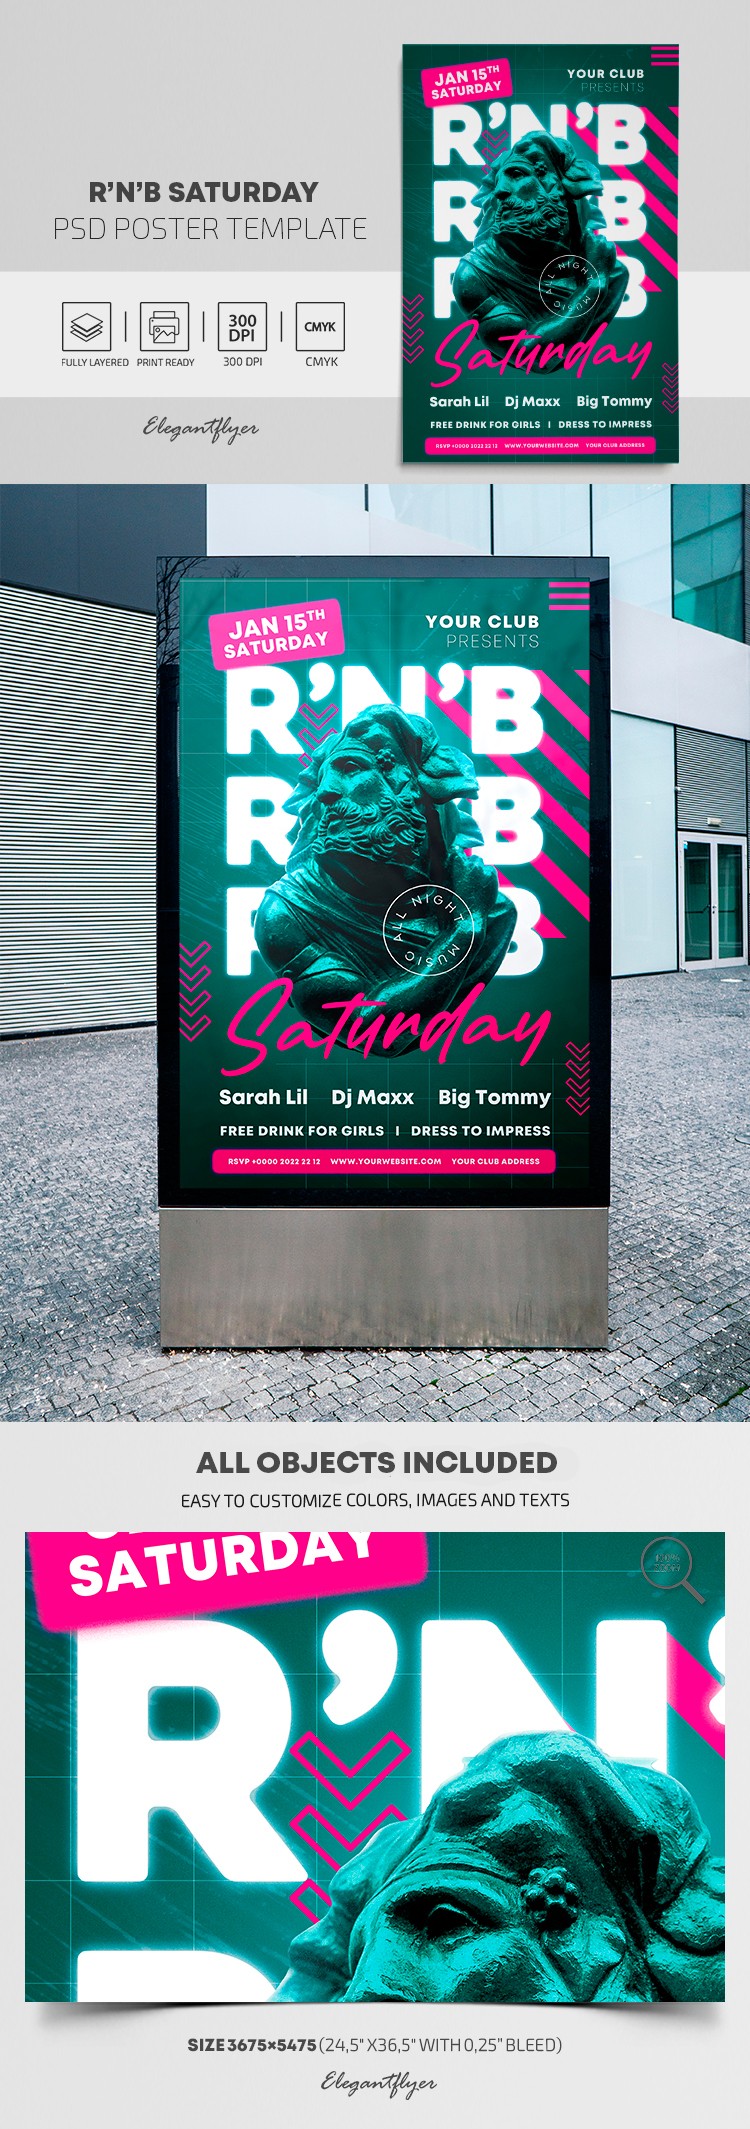 R'n'B Samstag Poster by ElegantFlyer